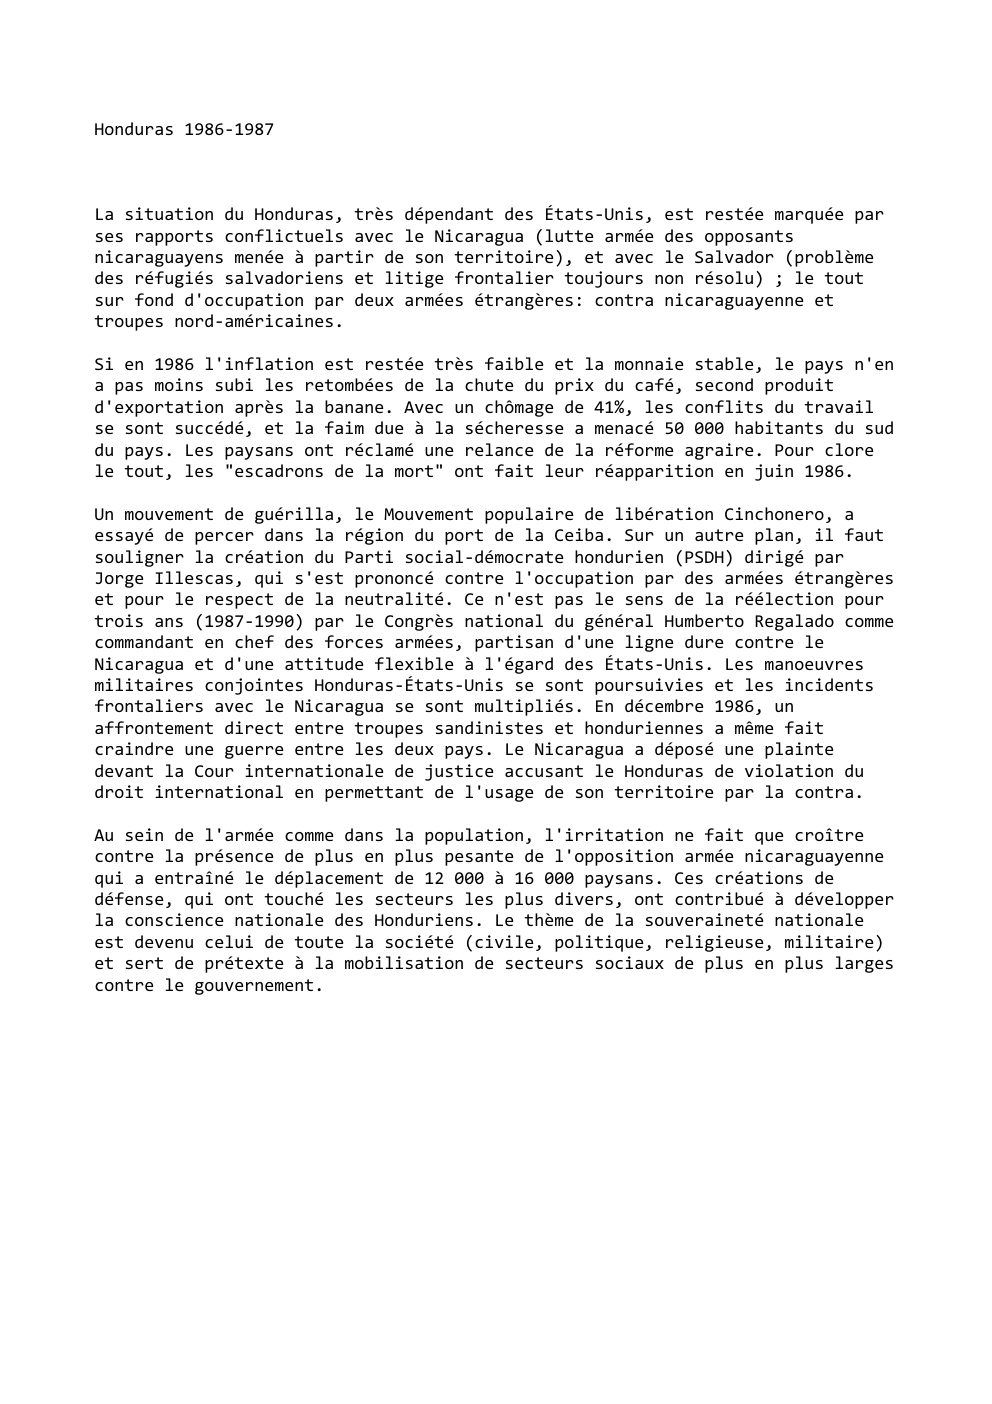 Prévisualisation du document Honduras 1986-1987

La situation du Honduras, très dépendant des États-Unis, est restée marquée par
ses rapports conflictuels avec le Nicaragua...